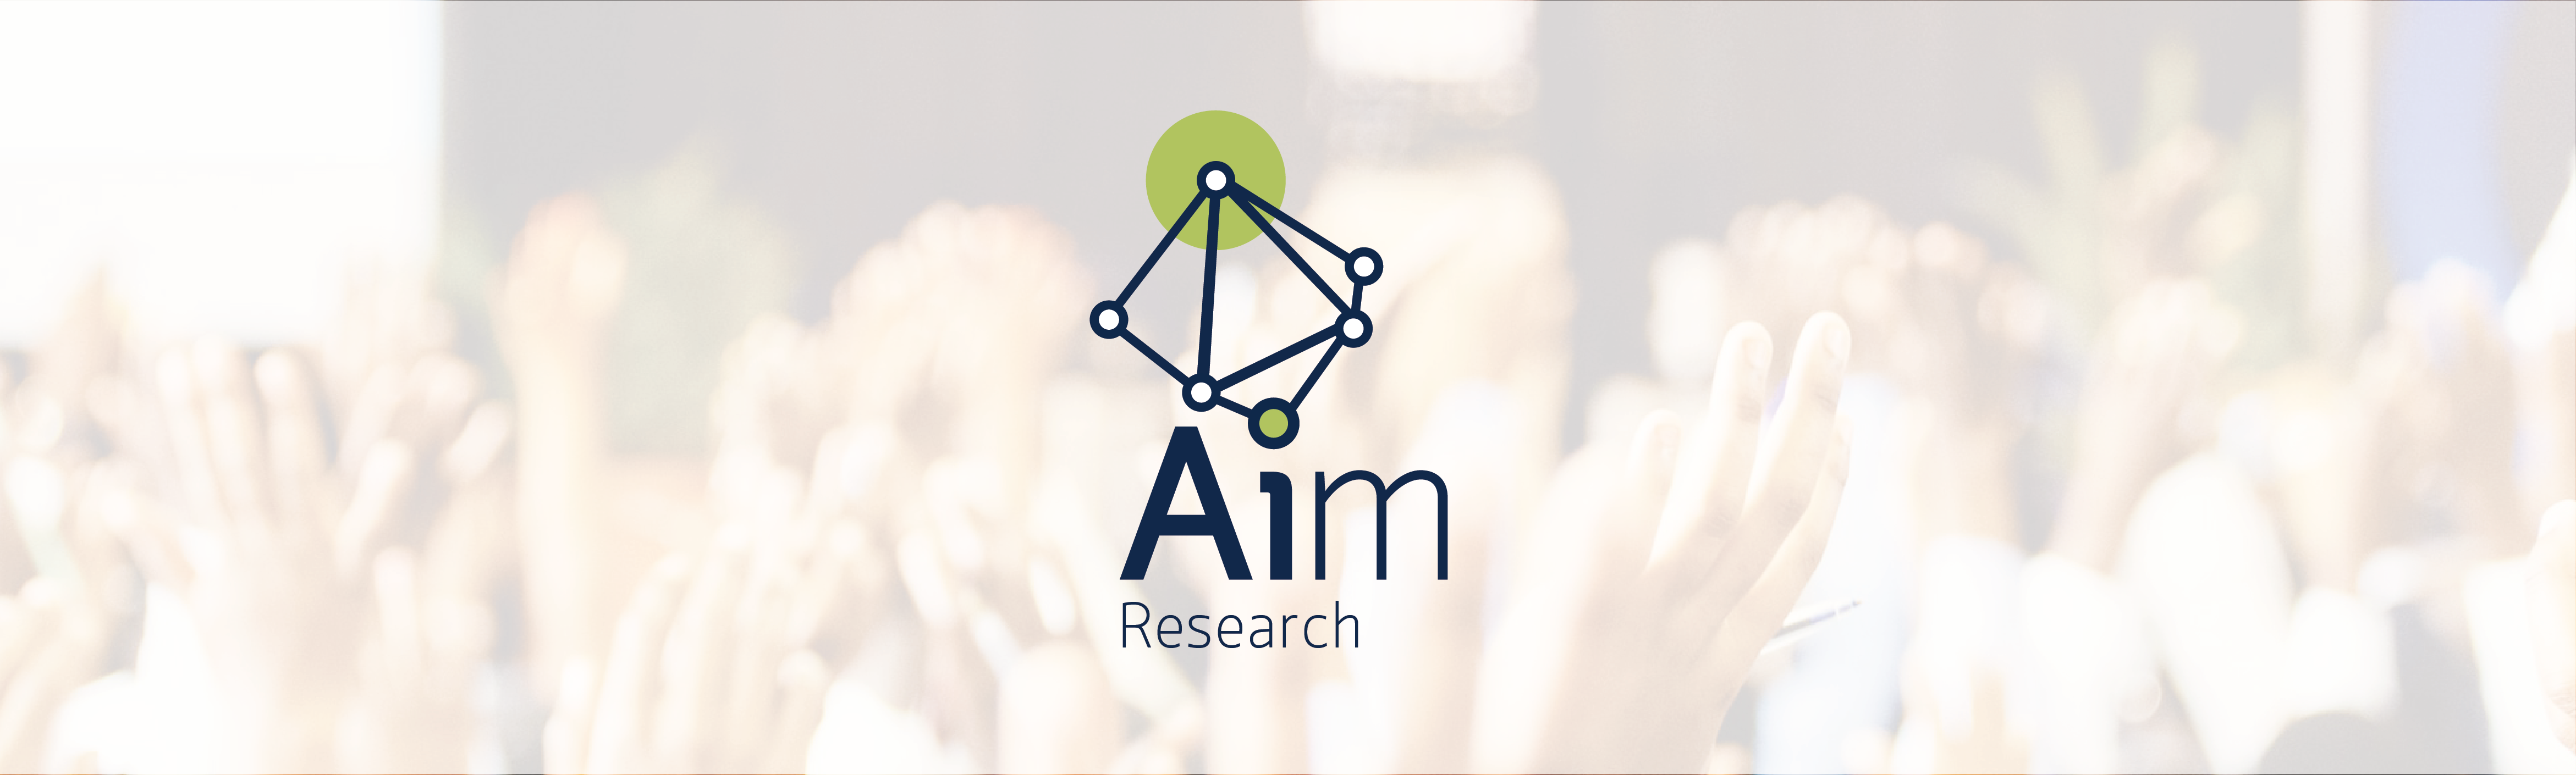 AIM Research